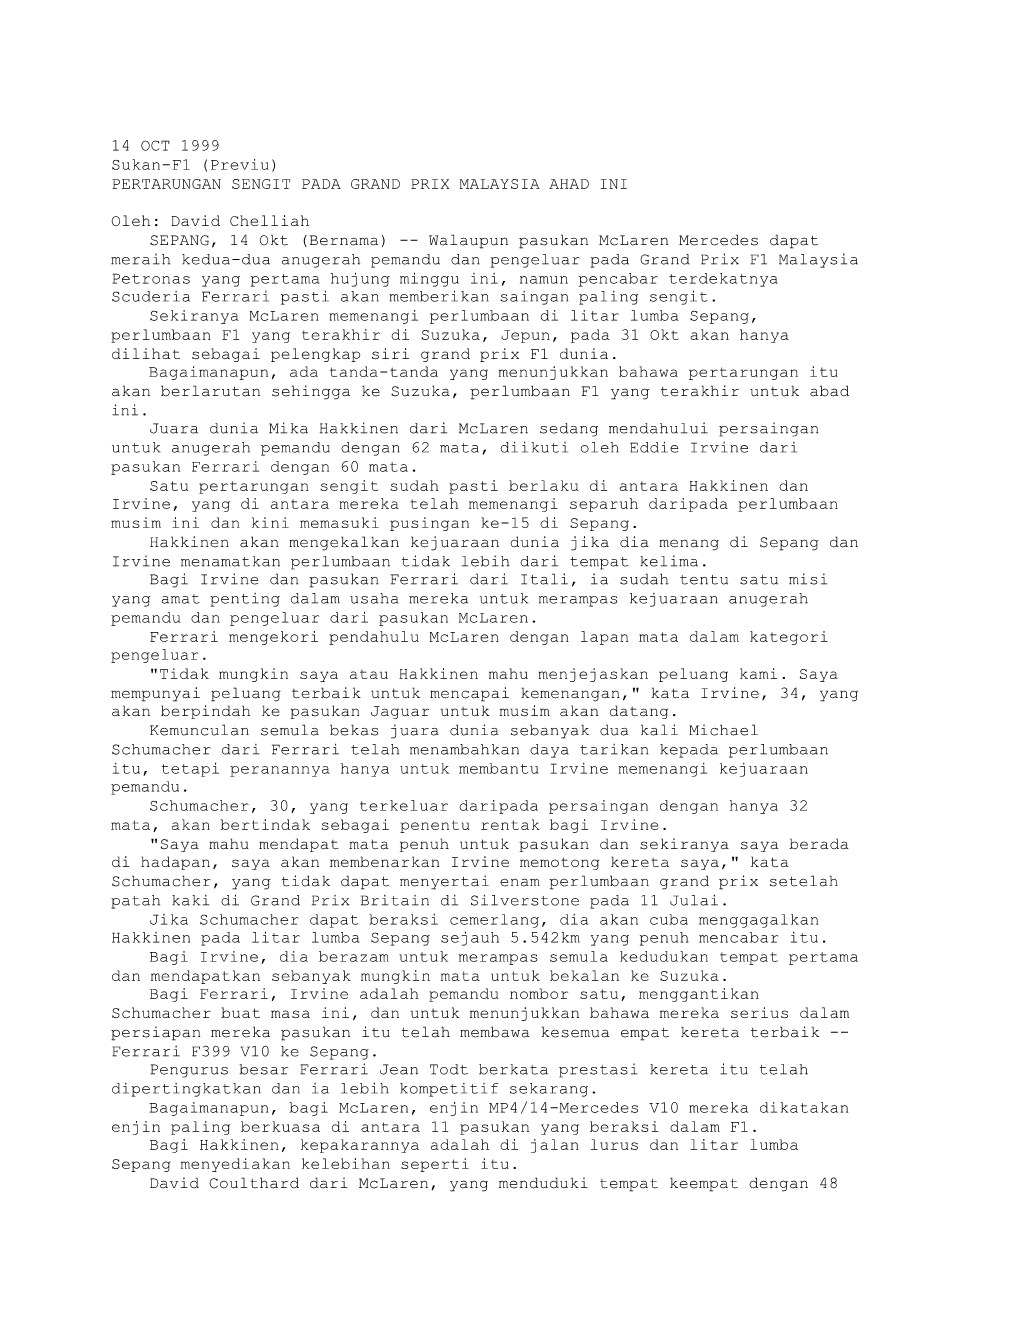 PERTARUNGAN SENGIT PADA GRAND PRIX MALAYSIA AHAD INI (Bernama 14/10/1999)